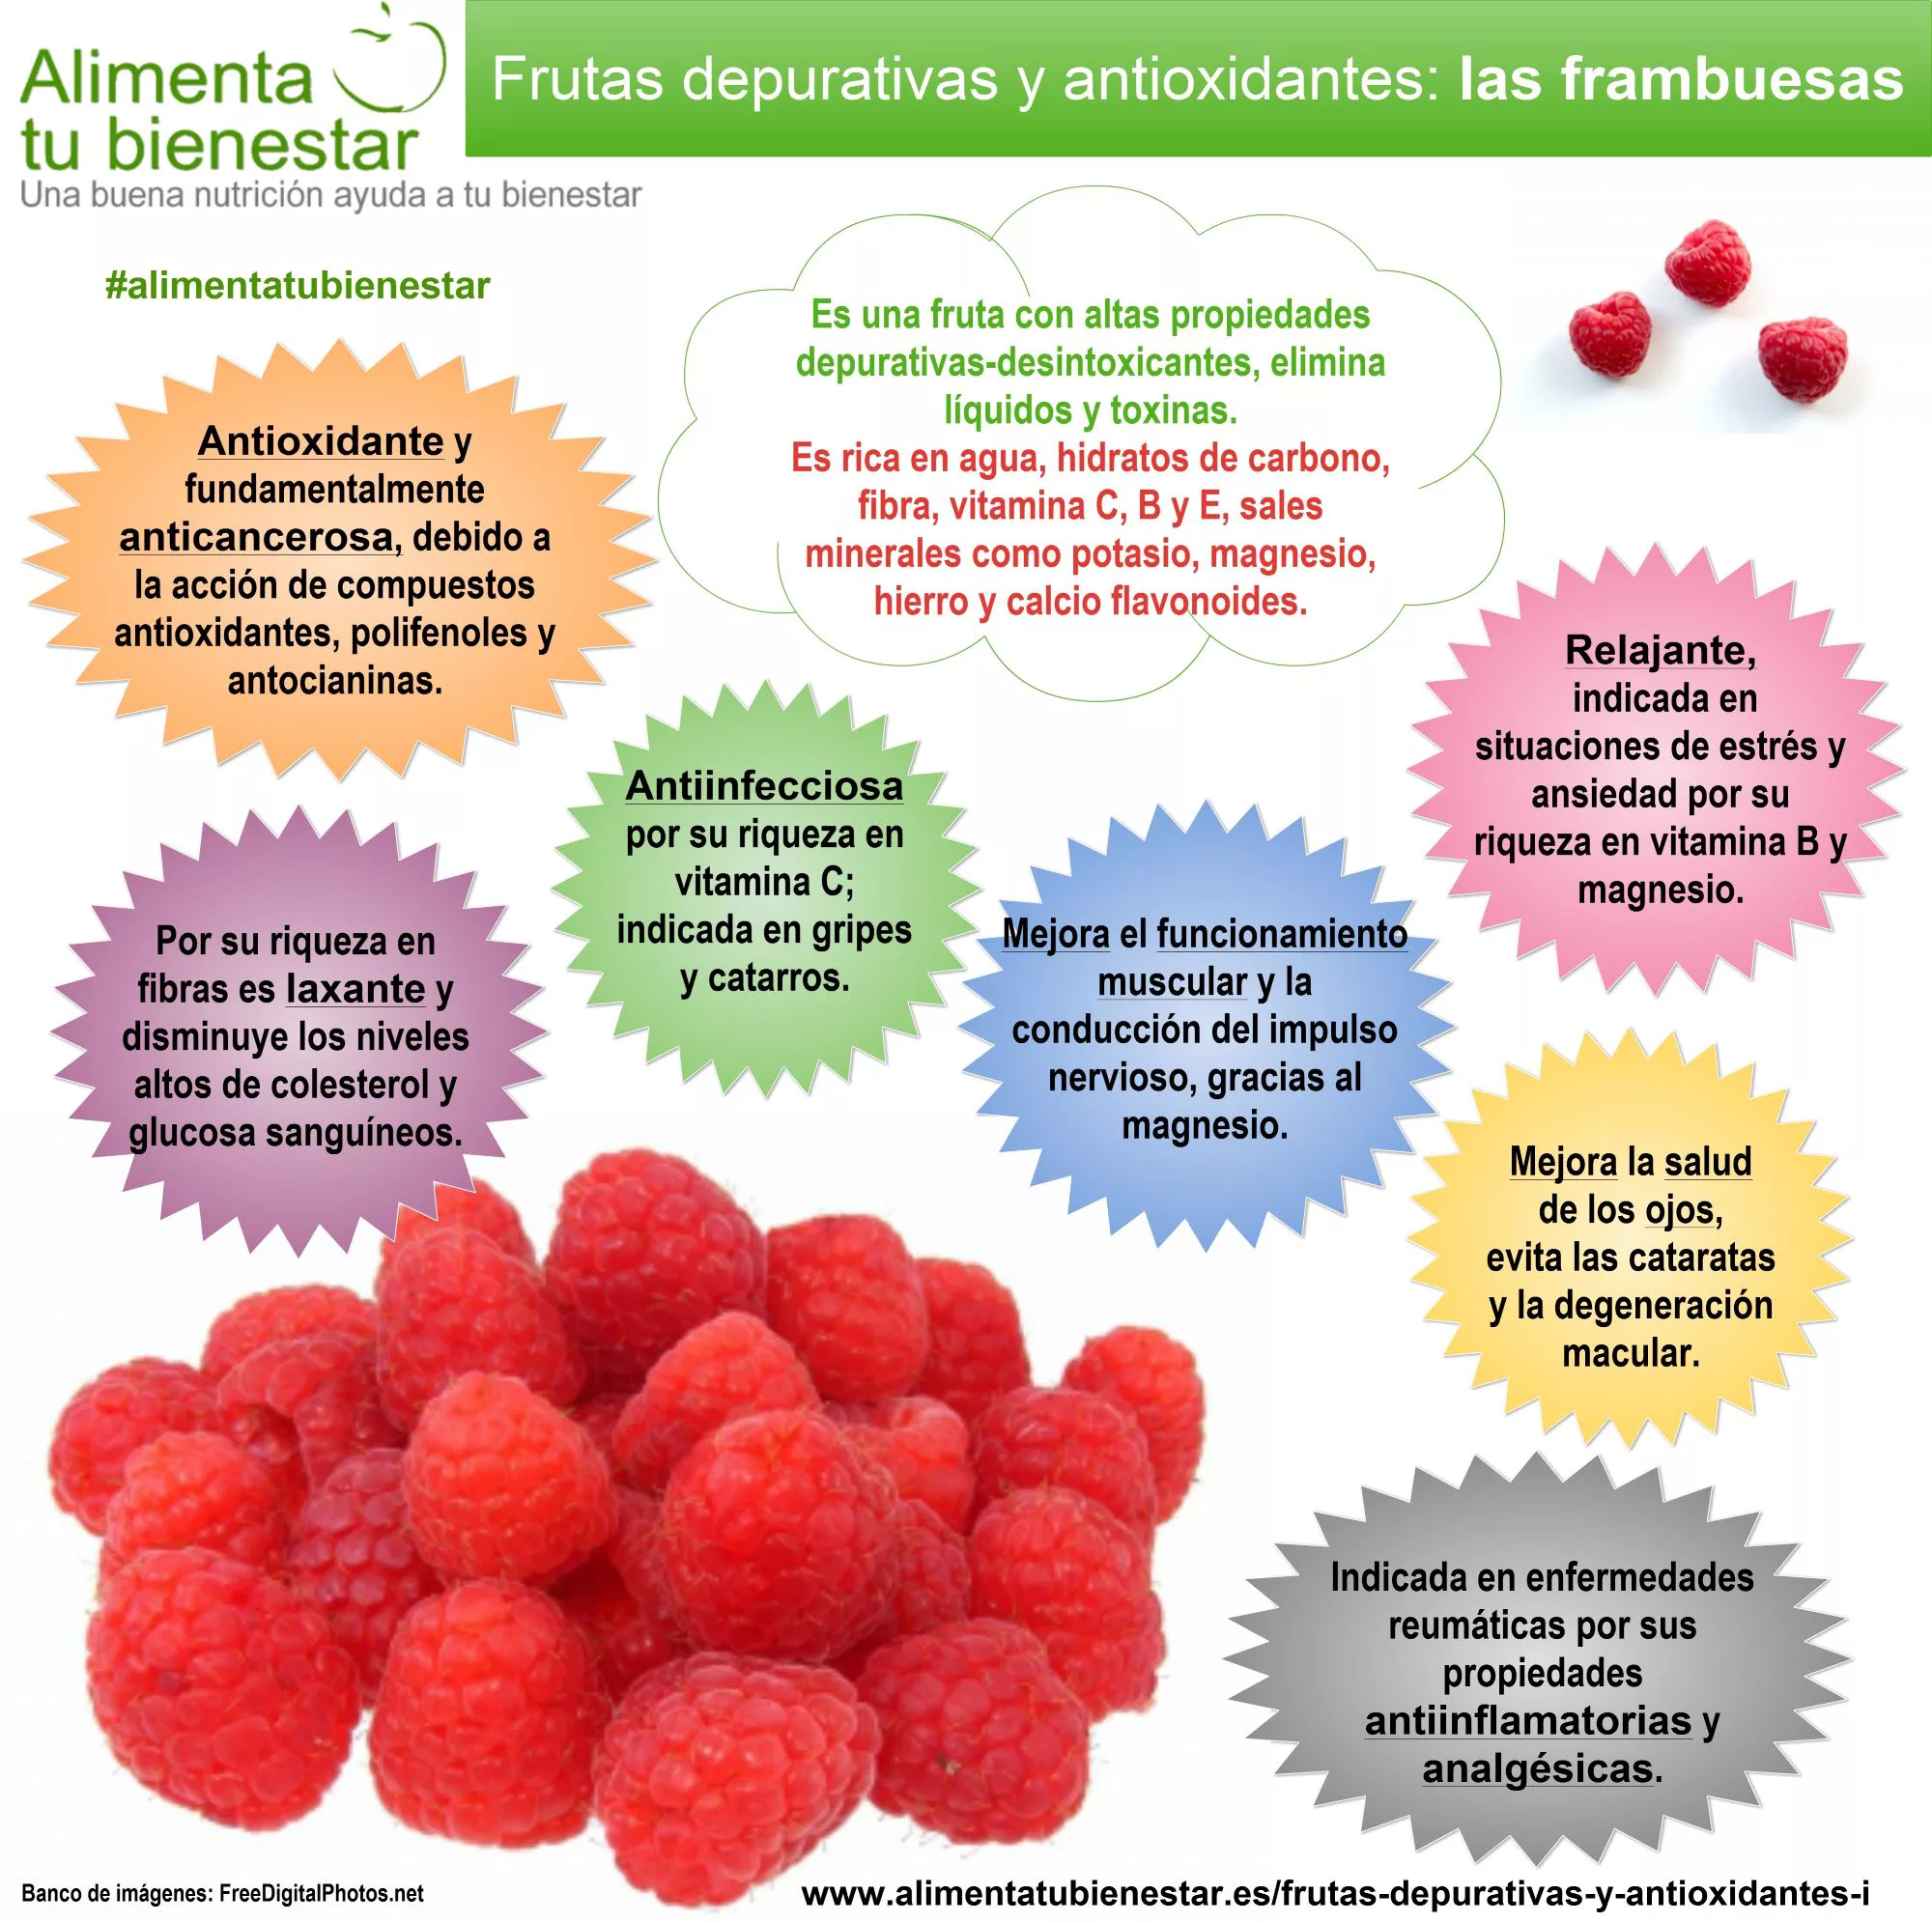 Infografía Frutas depurativas y antioxidantes Las Frambuesas